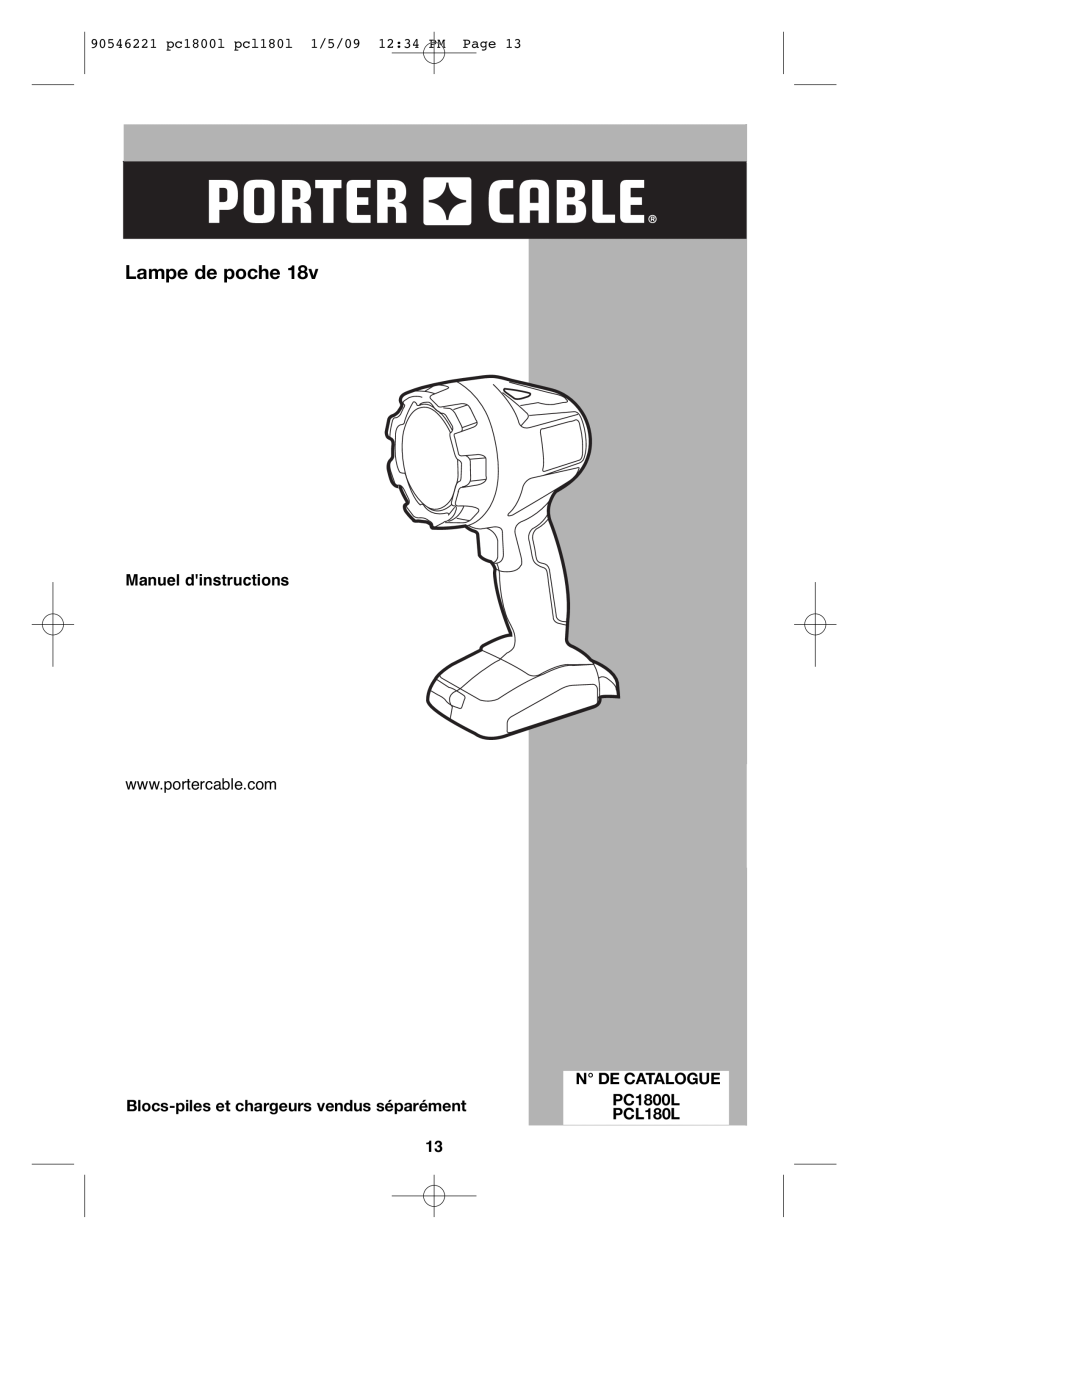 Porter-Cable PCL180L Lampe de poche, Manuel dinstructions, N De Catalogue, Blocs-pileset chargeurs vendus séparément 